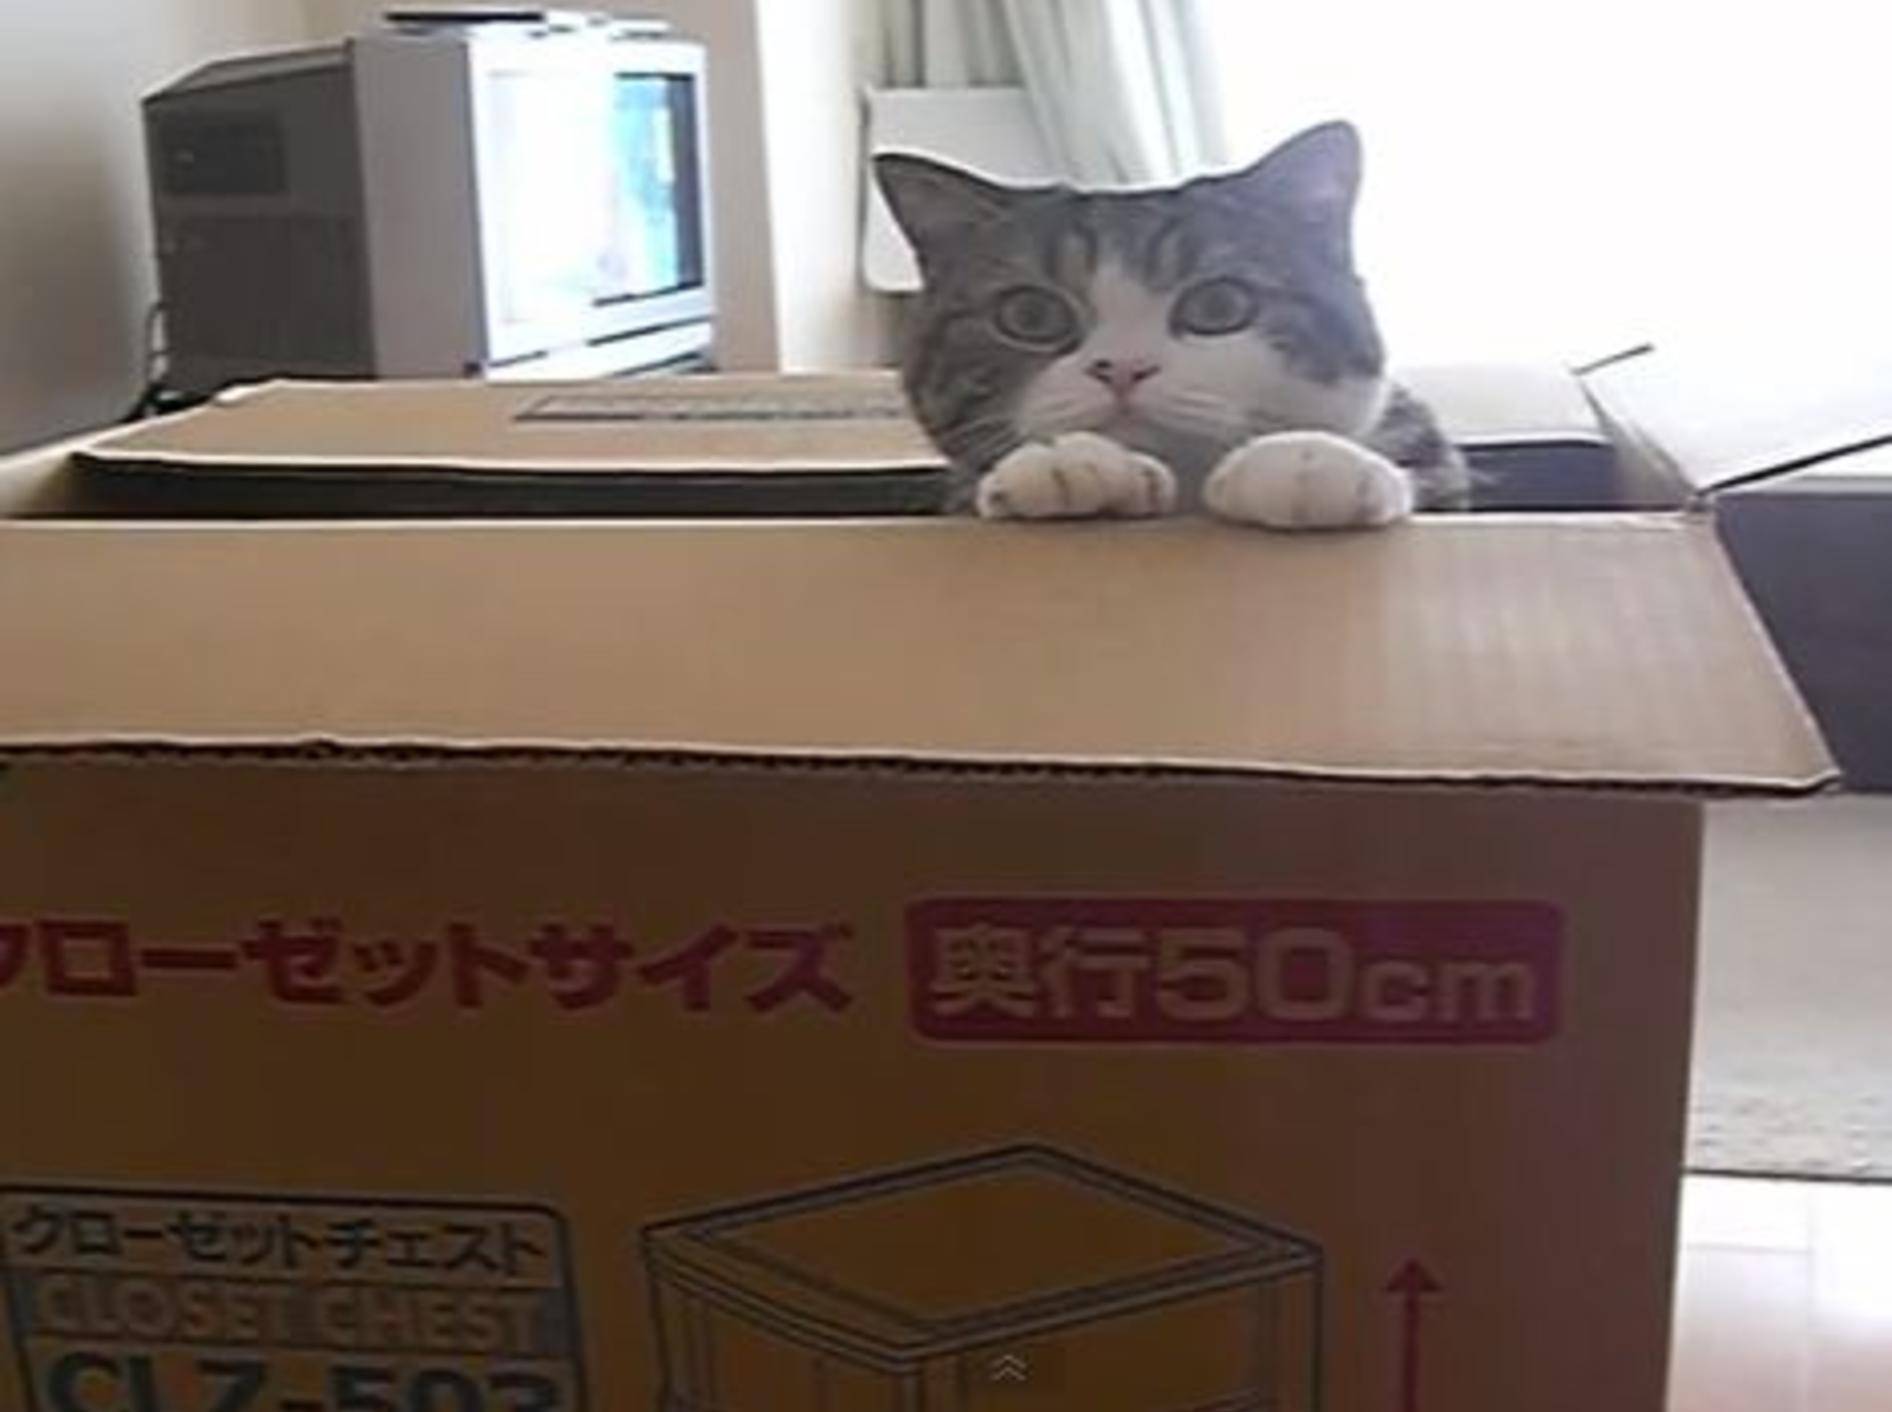 Katze Maru beweist: Es gibt keine zu großen Kartons! — Youtube / mugumogu